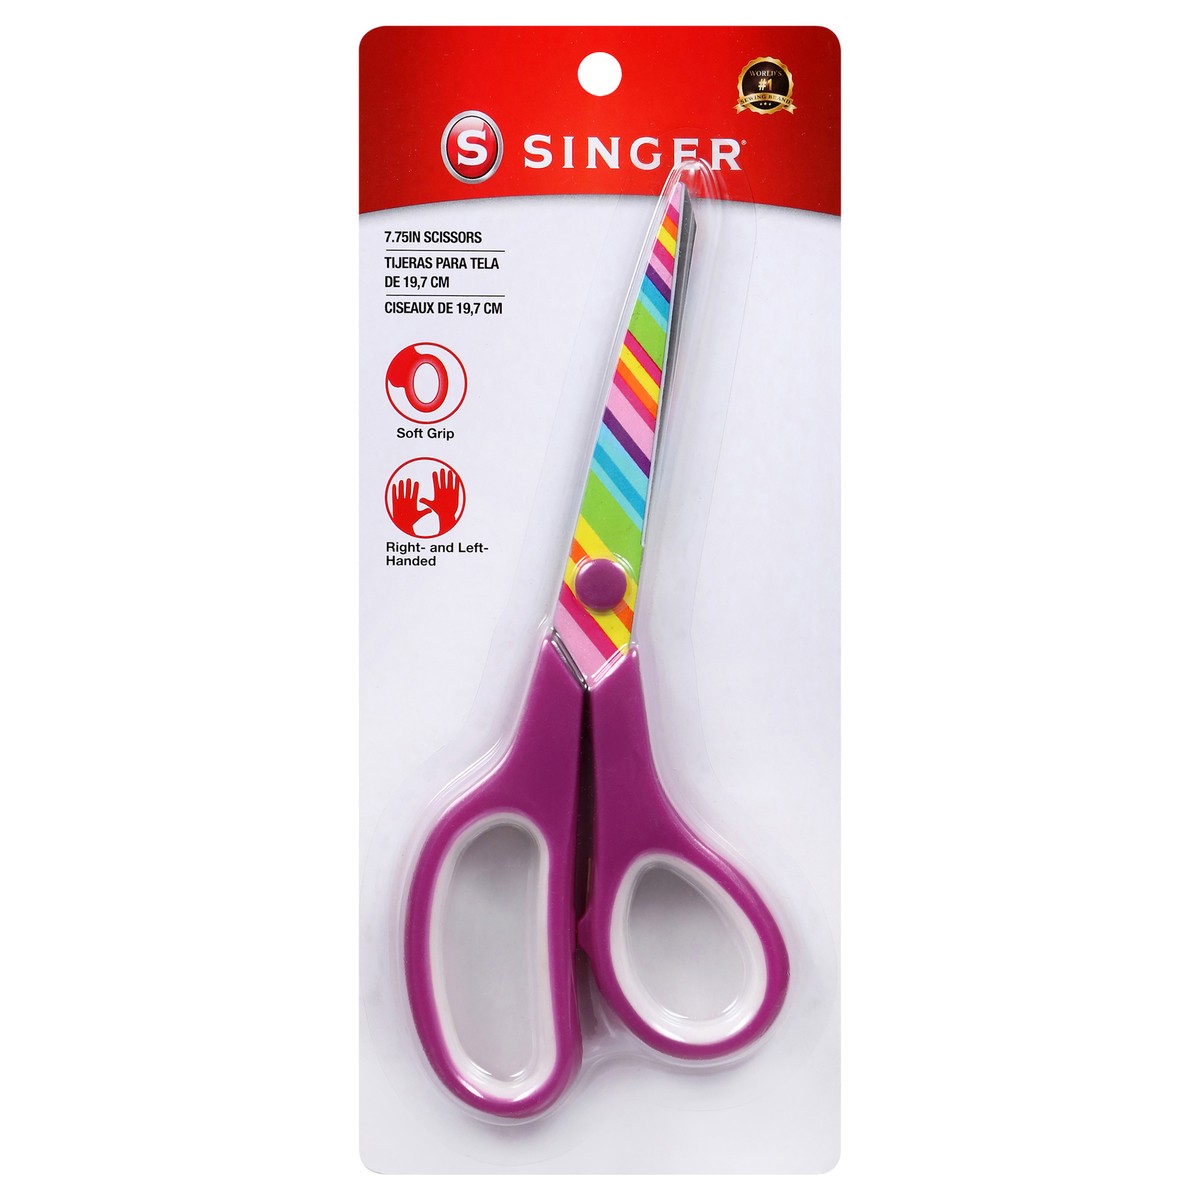 Singer 7 ? Multi Purpose Scissors, Rainbow Print Blades